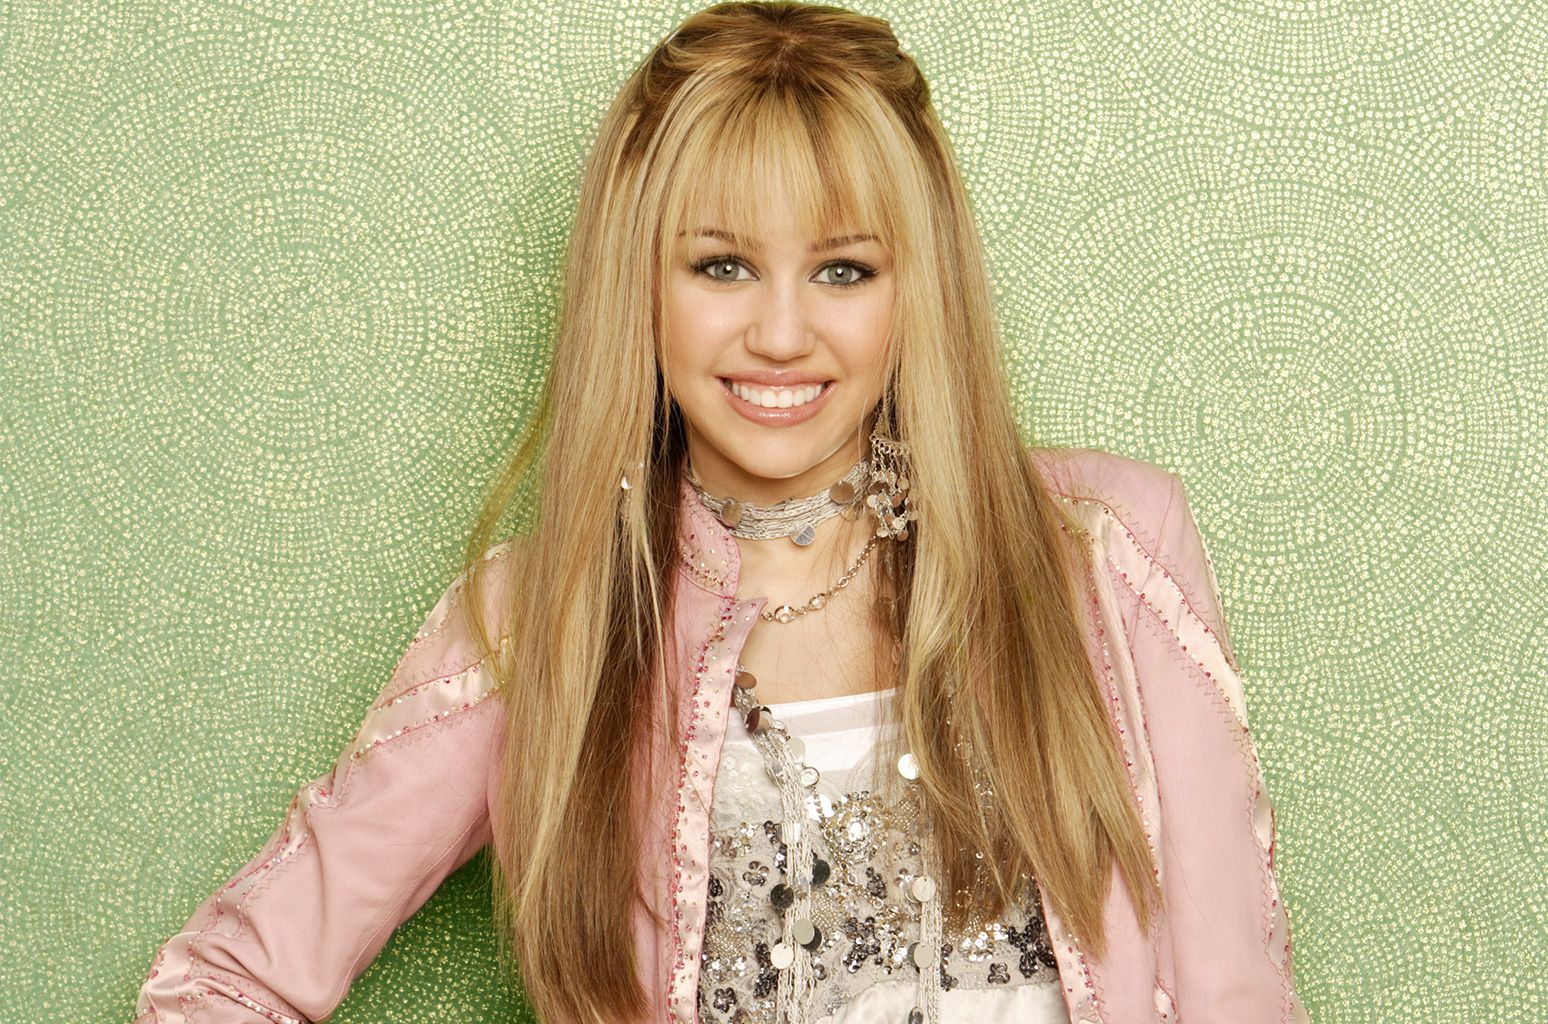 Miley Cyrus as Hannah Montana